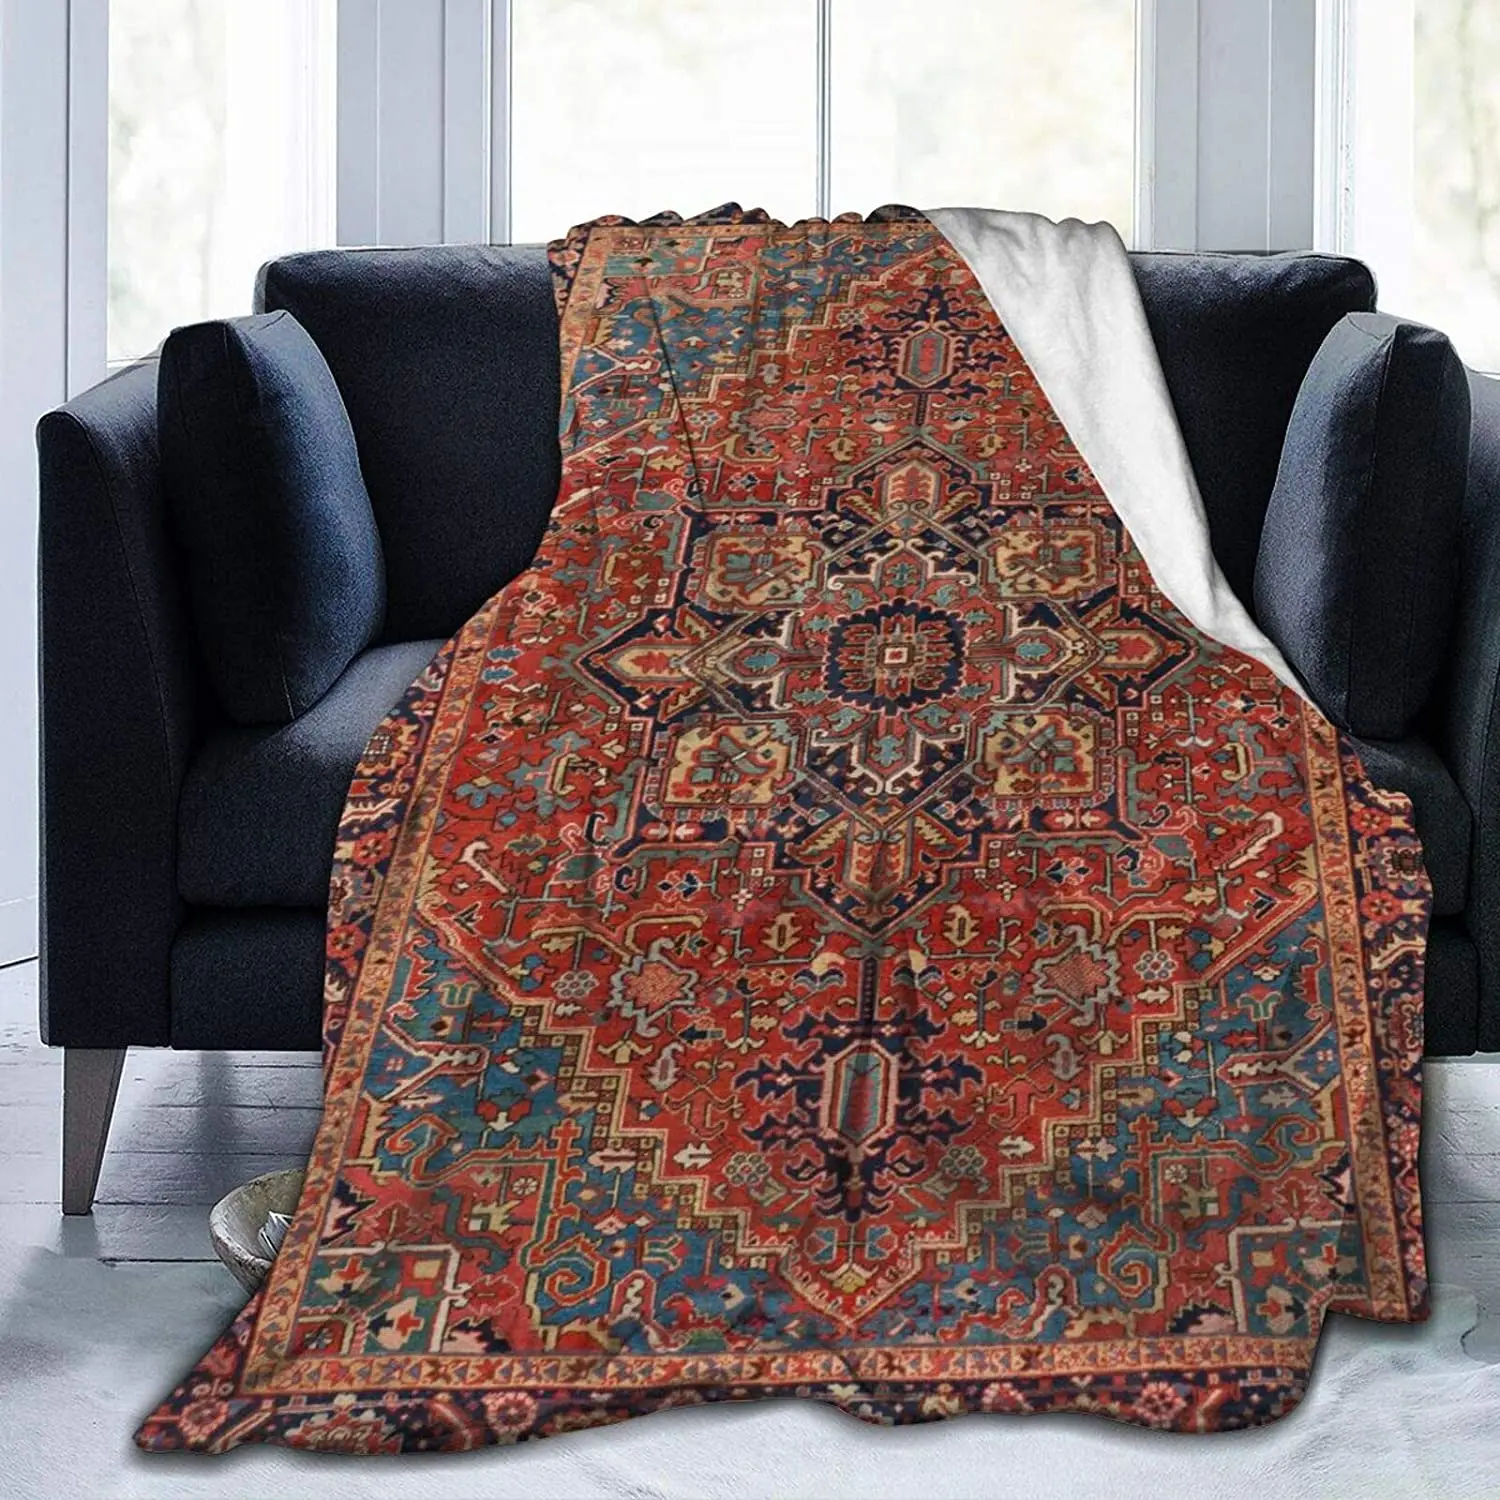 

Античное курдское Северо-Западное персидское одеяло, винтажное фланелевое одеяло для детей, подростков и взрослых, мягкое уютное теплое пушистое одеяло